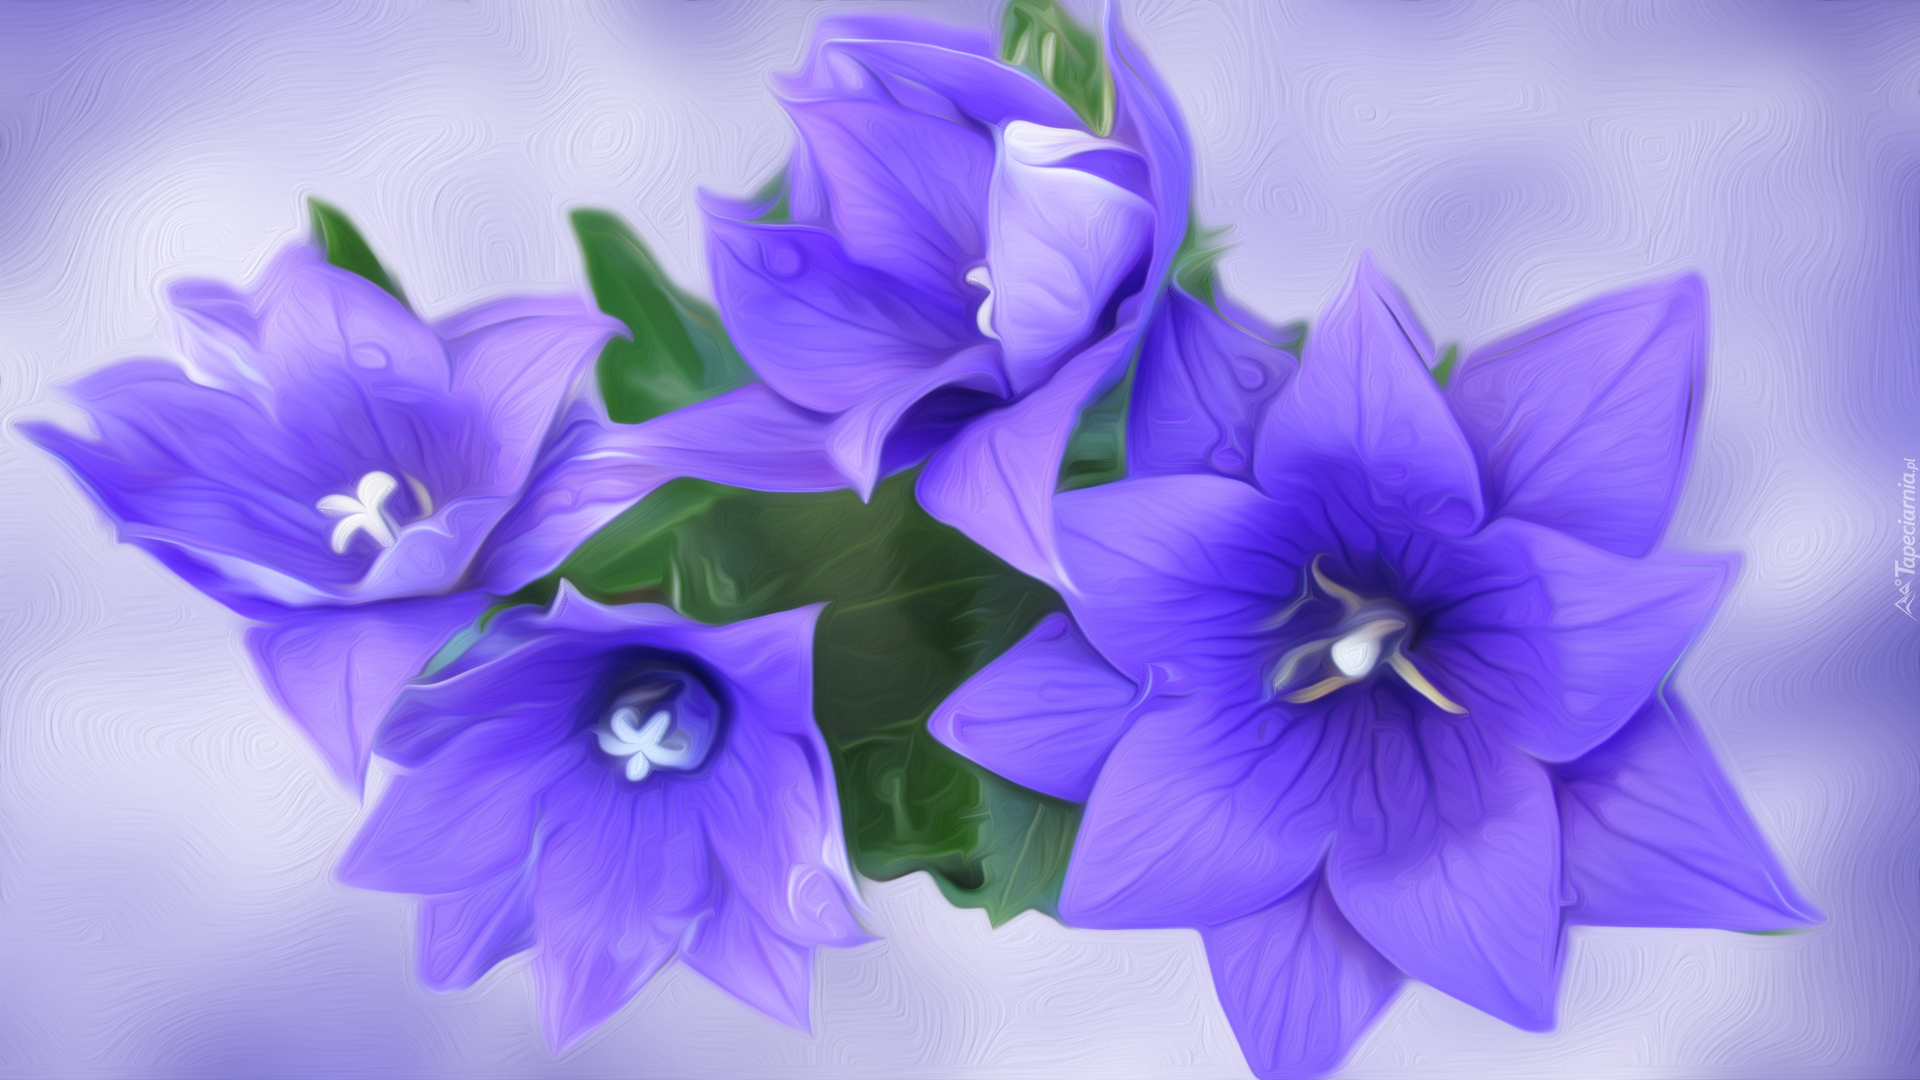 Kwiaty, Niebieskie